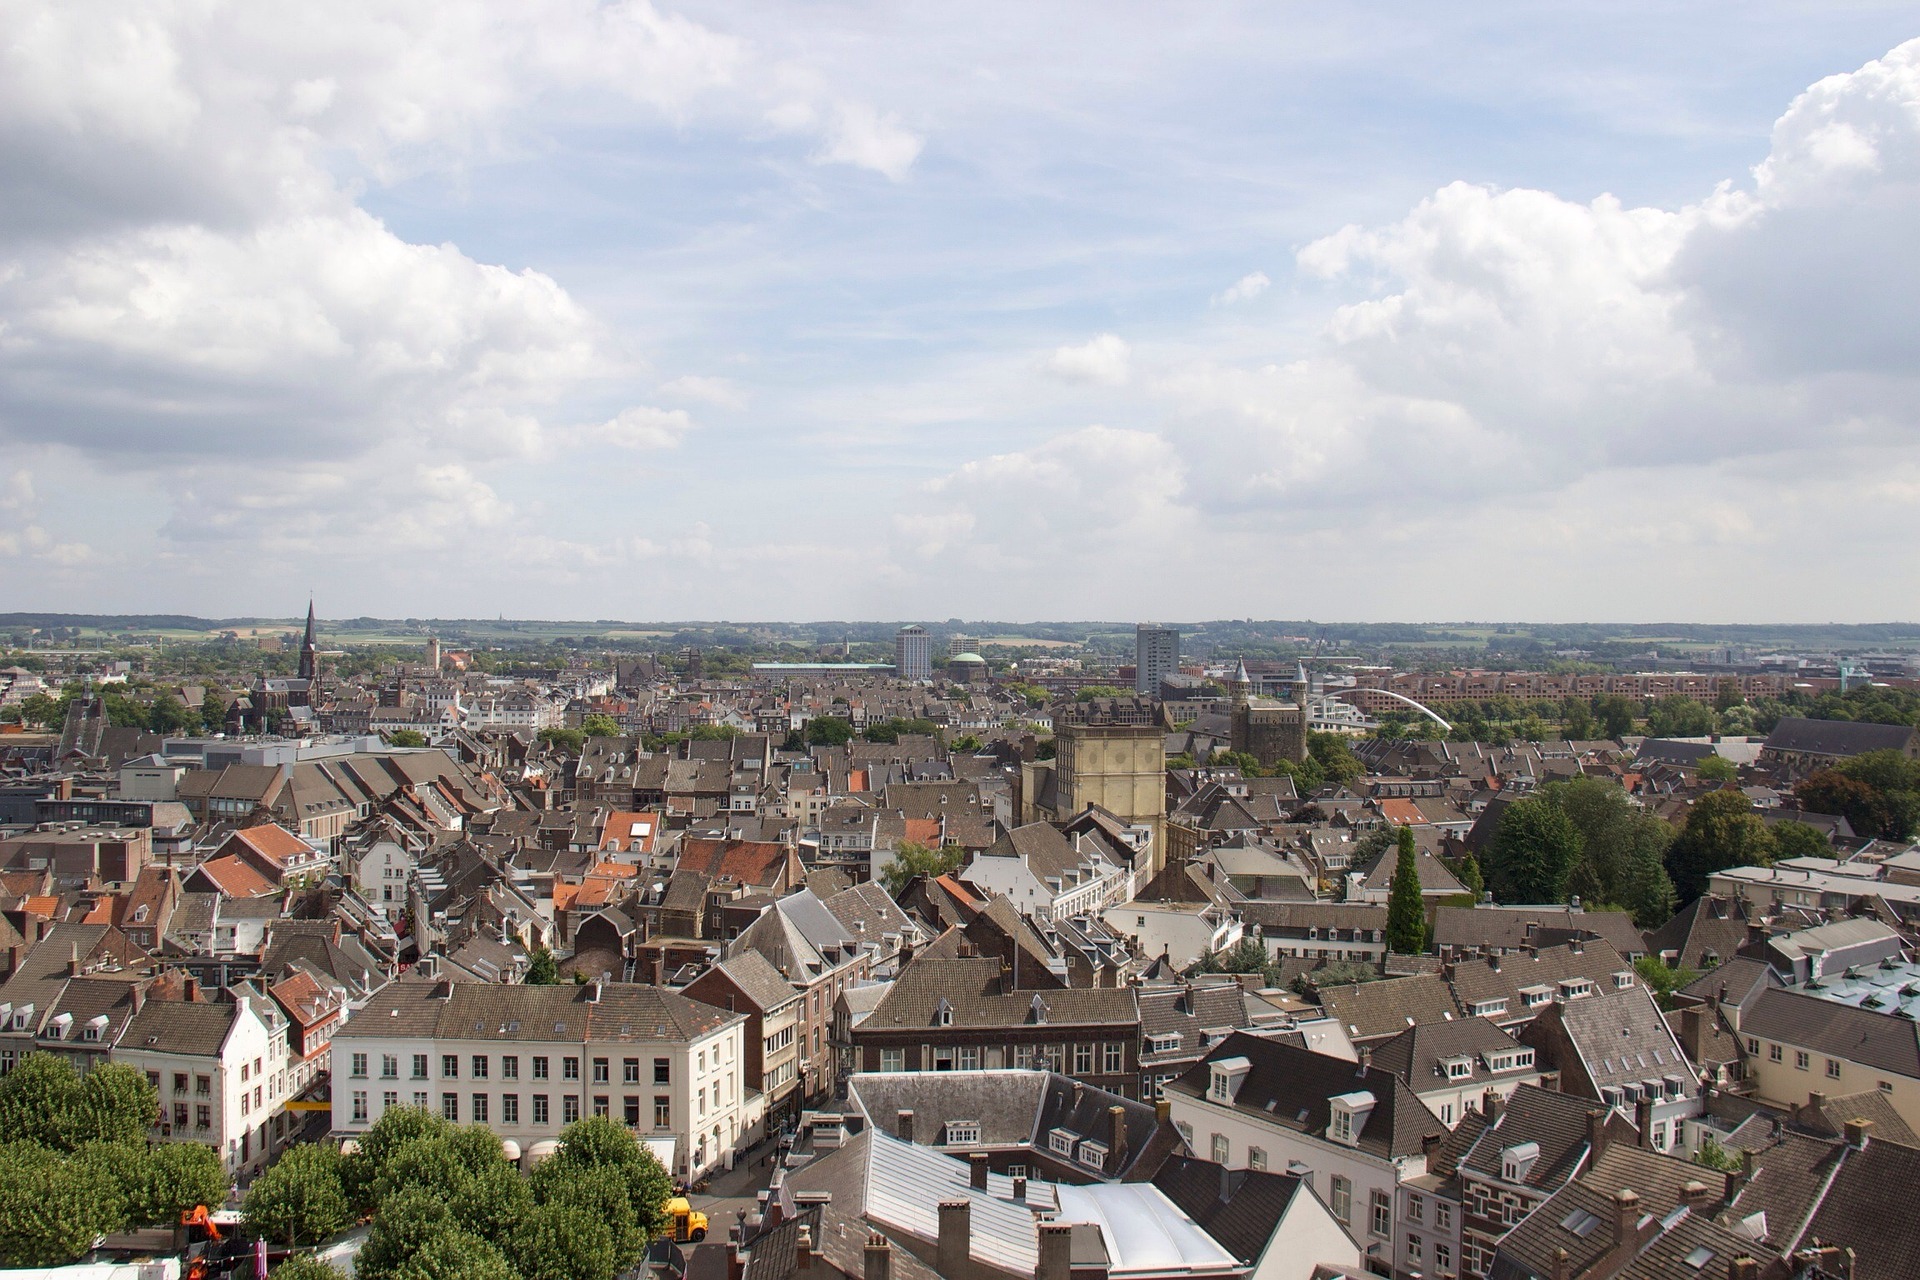 HuysVest-Vastgoed-Maastricht-Appartement-kopen-en-verkopen